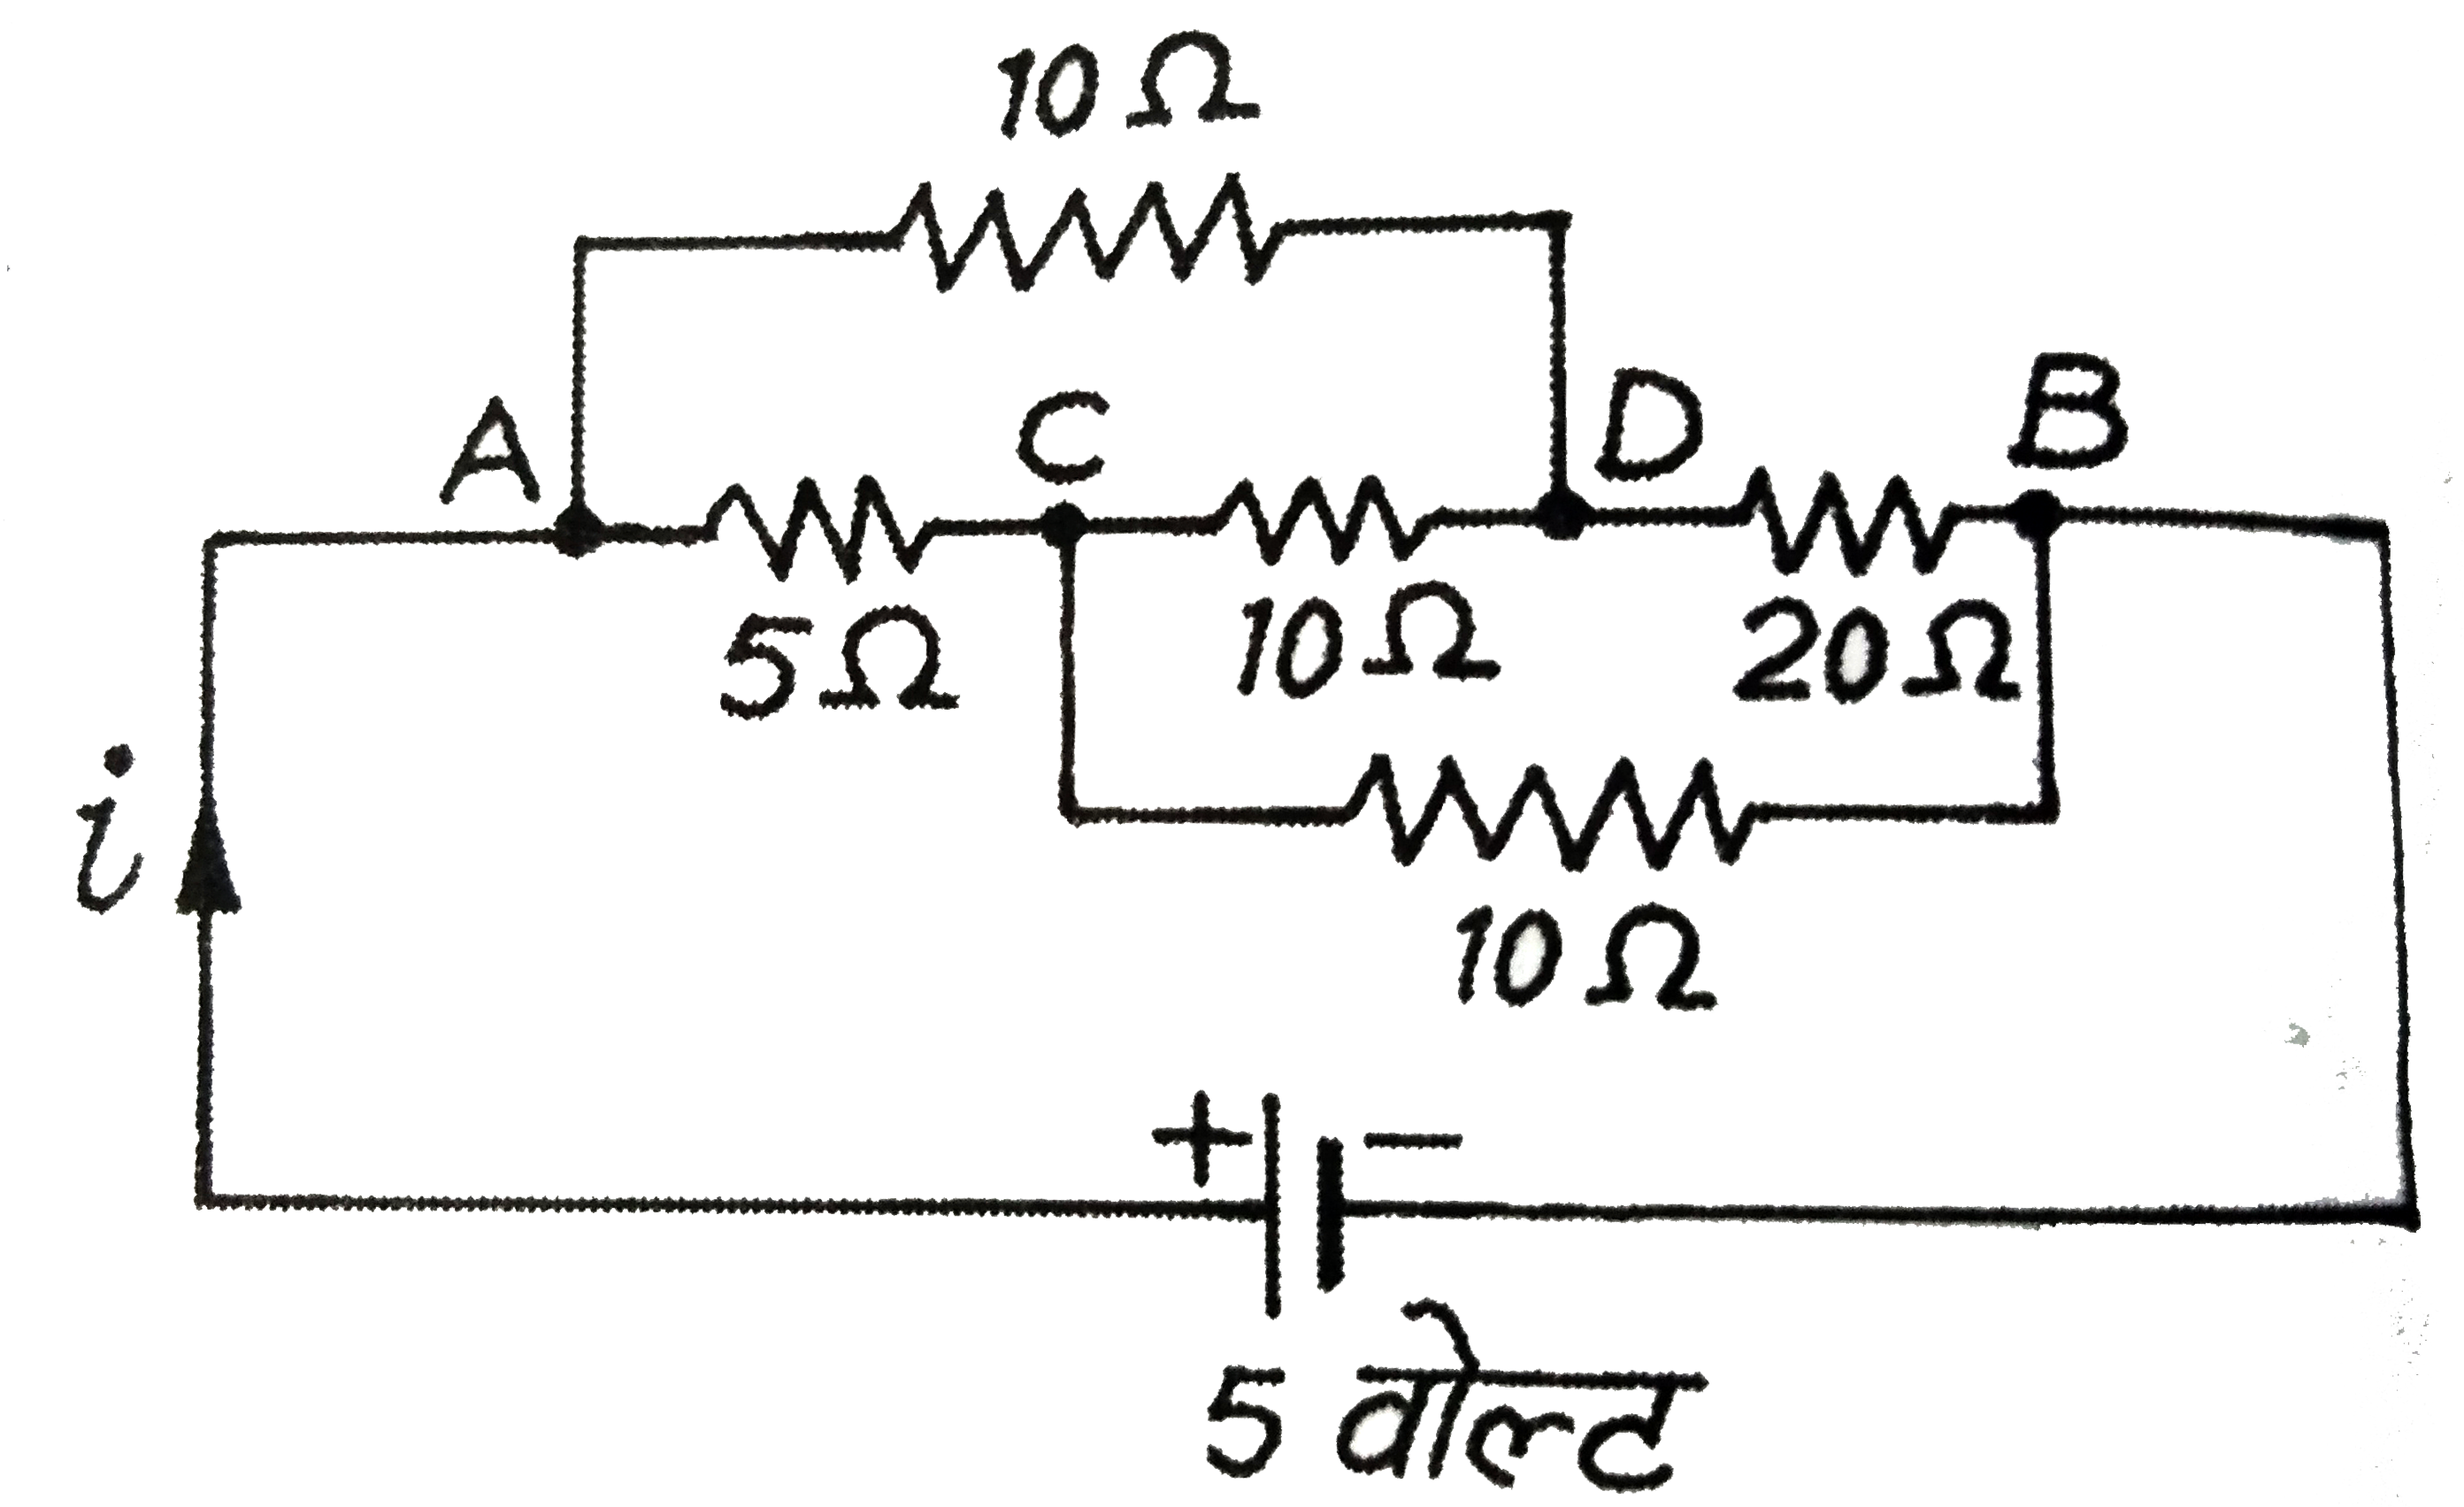 संलग्न परिपथ में बिन्दुओ A व B  के बीच  तुल्य - प्रतिरोध  ज्ञात  कीजिए । वैधुत  धारा i  का मान तथा वैधुत शक्ति - क्षय  भी  ज्ञात  कीजिए ।